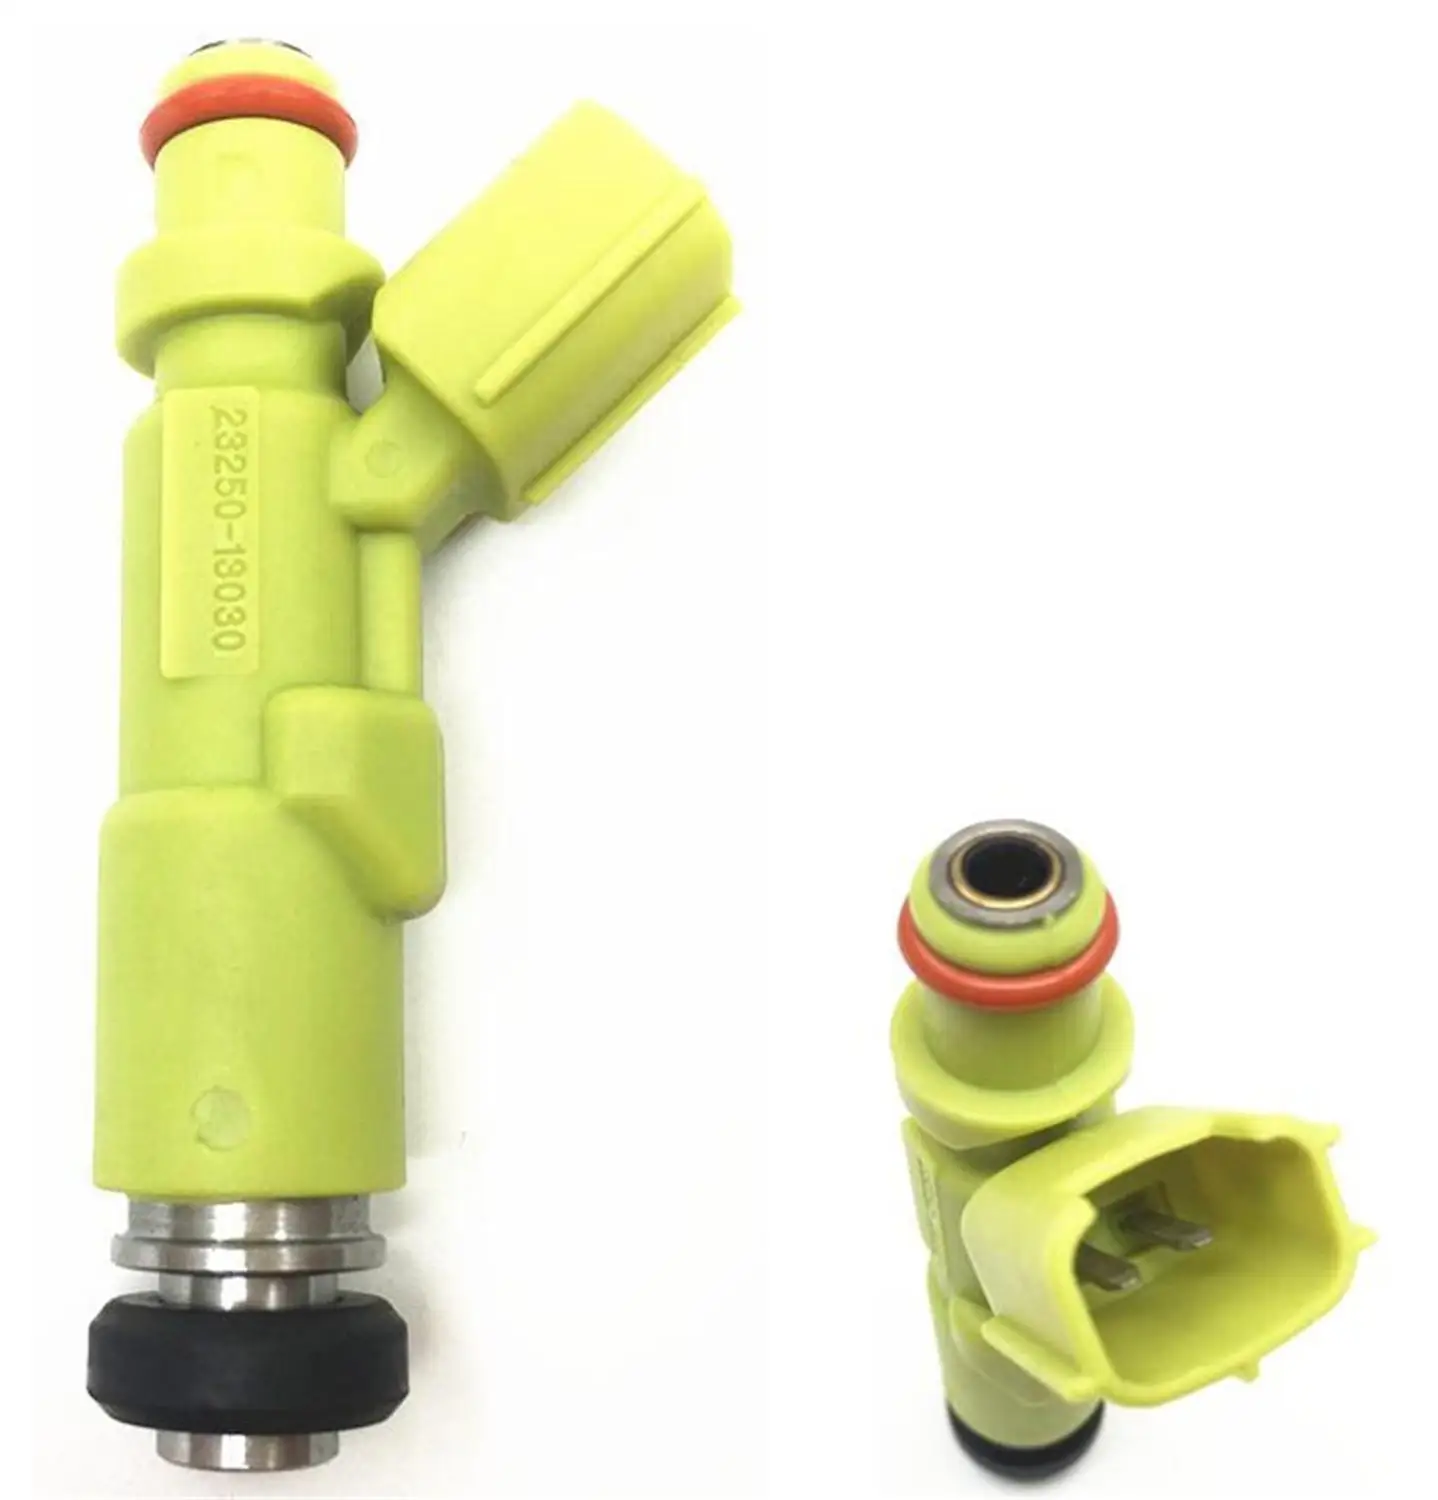 

4pcs Original Auto Fuel Injectors 23250-13030 23209-13030 Car Fuel Spray Nozzles for Toyota kf60 72 80 82